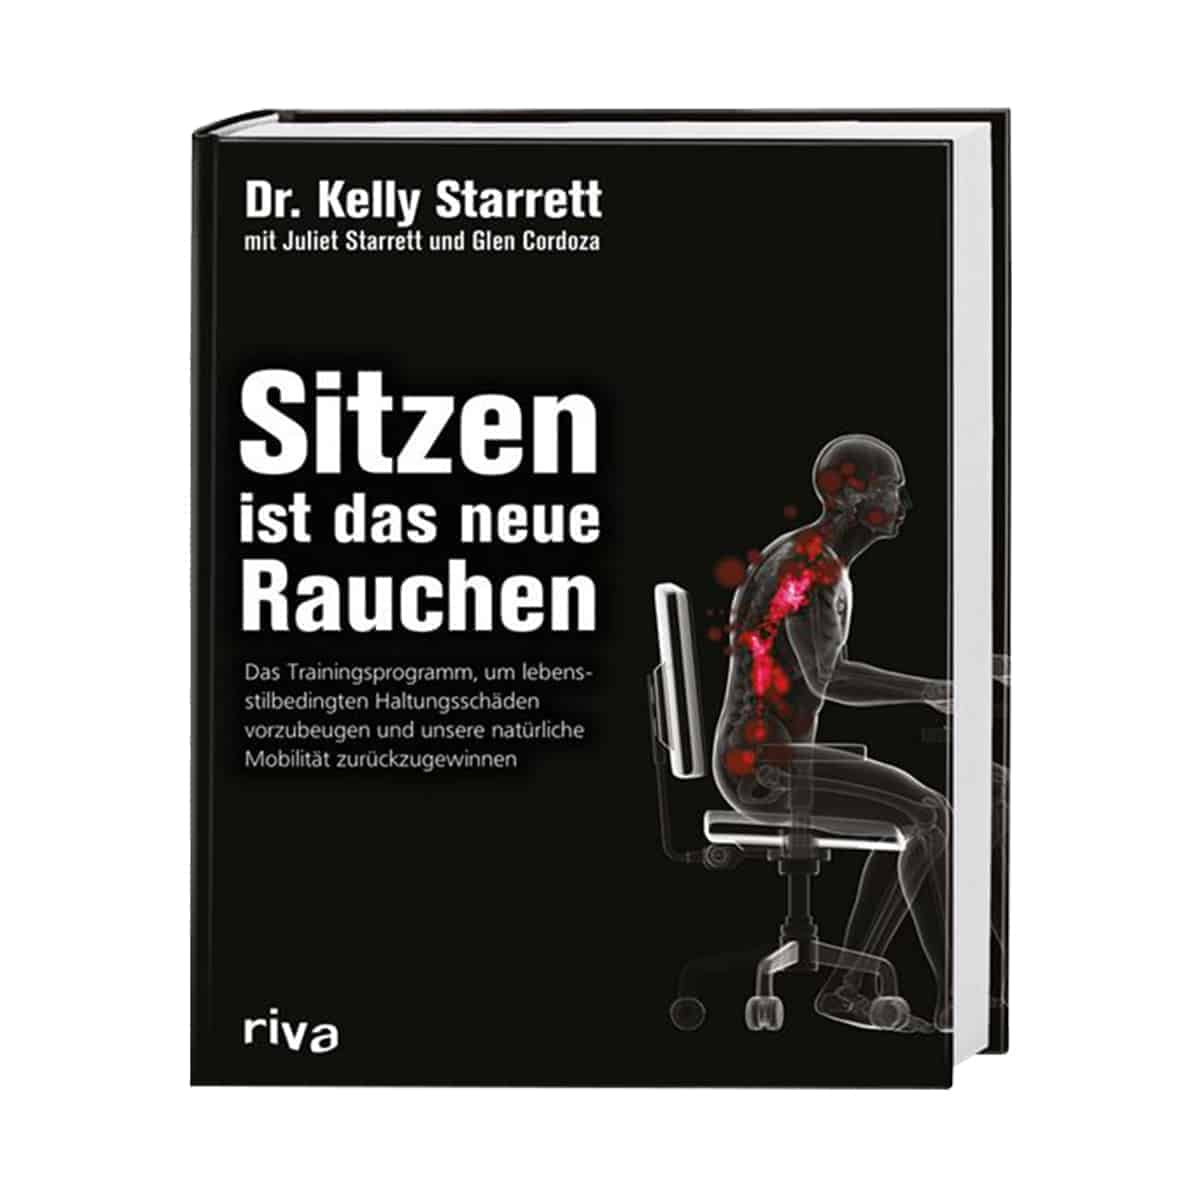 Buch "Sitzen ist das neue Rauchen" von Dr. Kelly Starrett